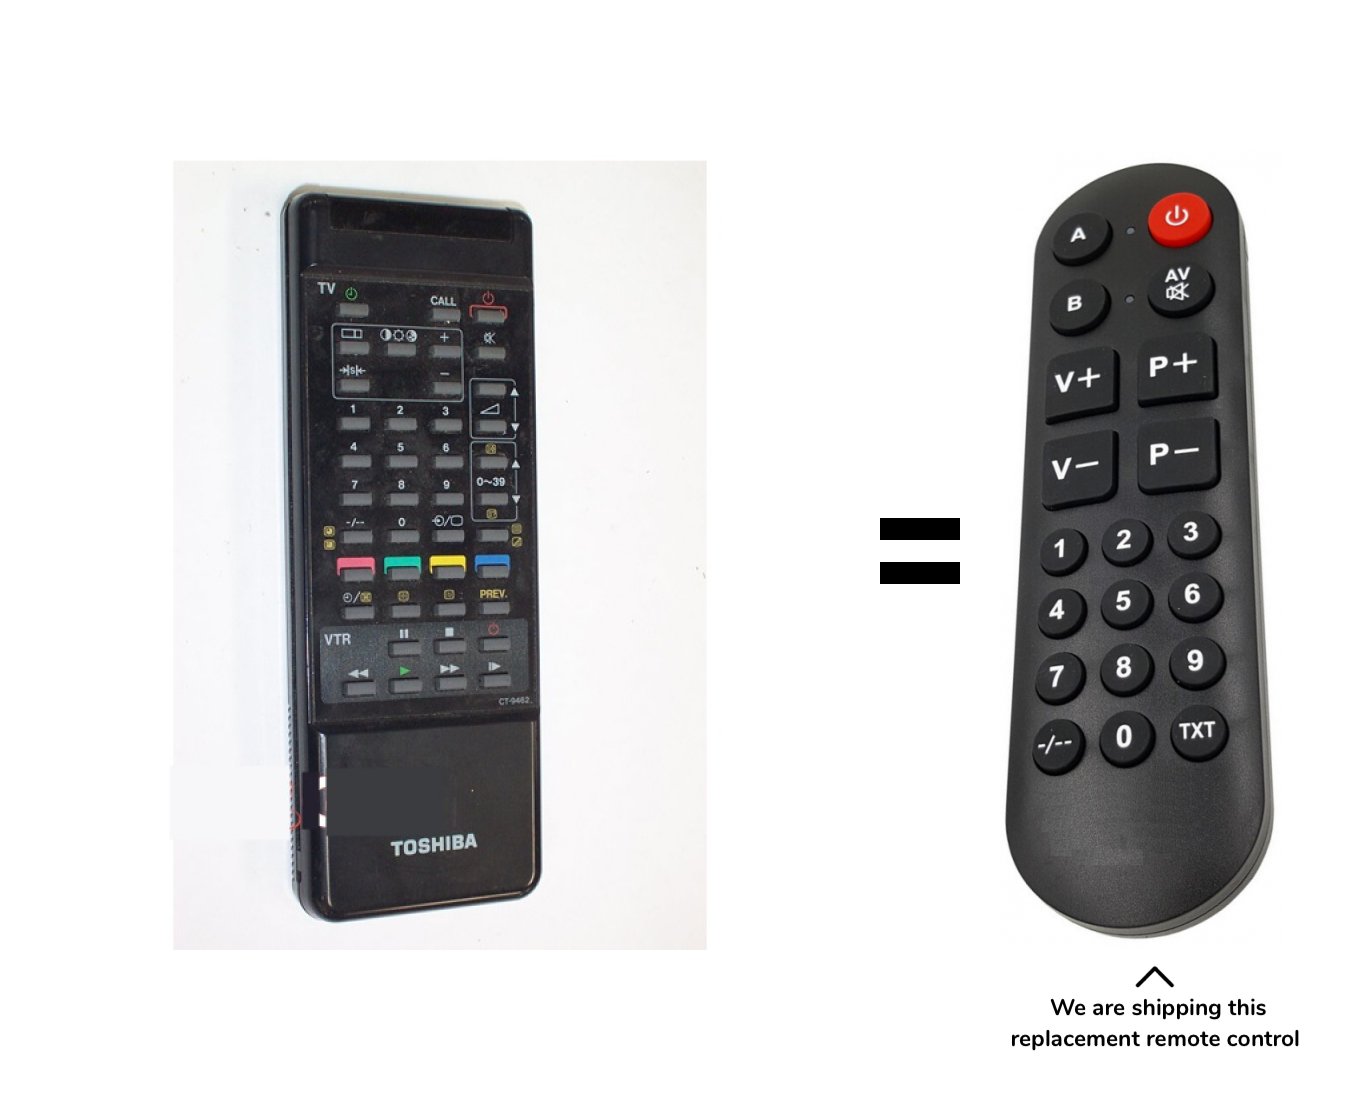 Toshiba TV2857DD remote control for seniors